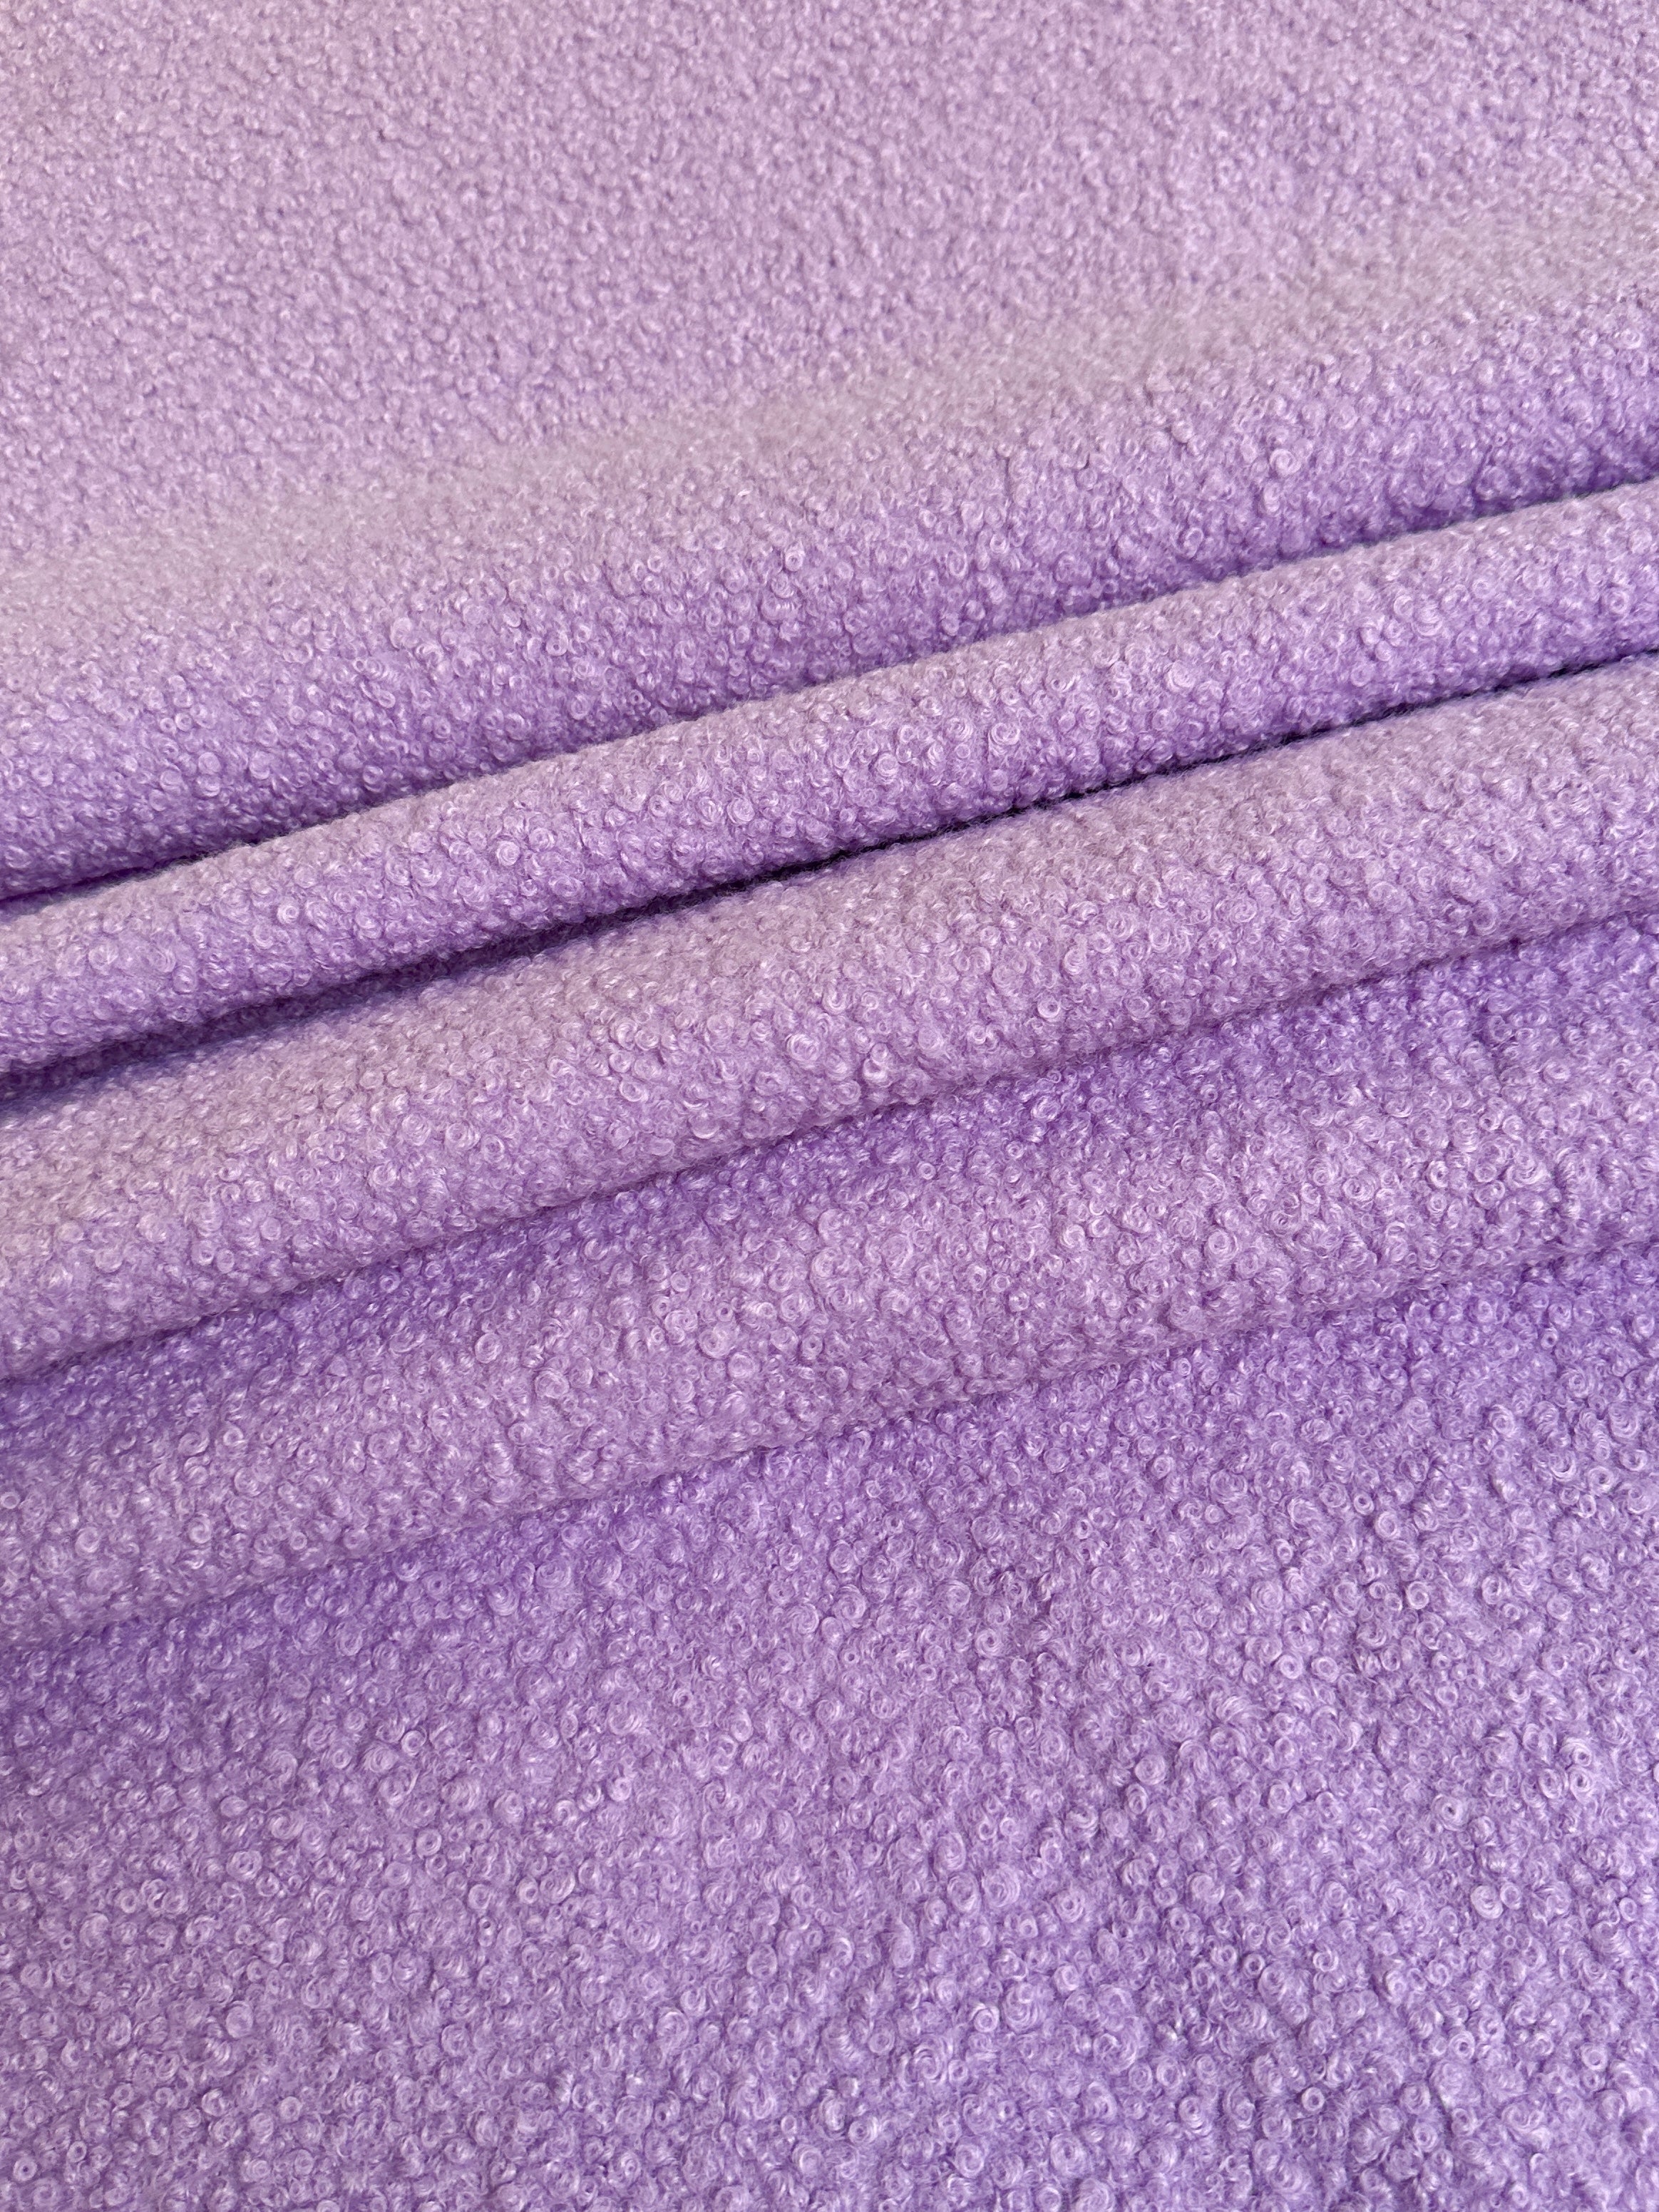 lavender Lamb Premium Faux Wool, light purple Faux Wool, purple Faux Wool, Faux Wool for jacket, premium Faux Wool, Faux Wool for winter, winter collection, Faux Wool on sale, Faux Wool in low price